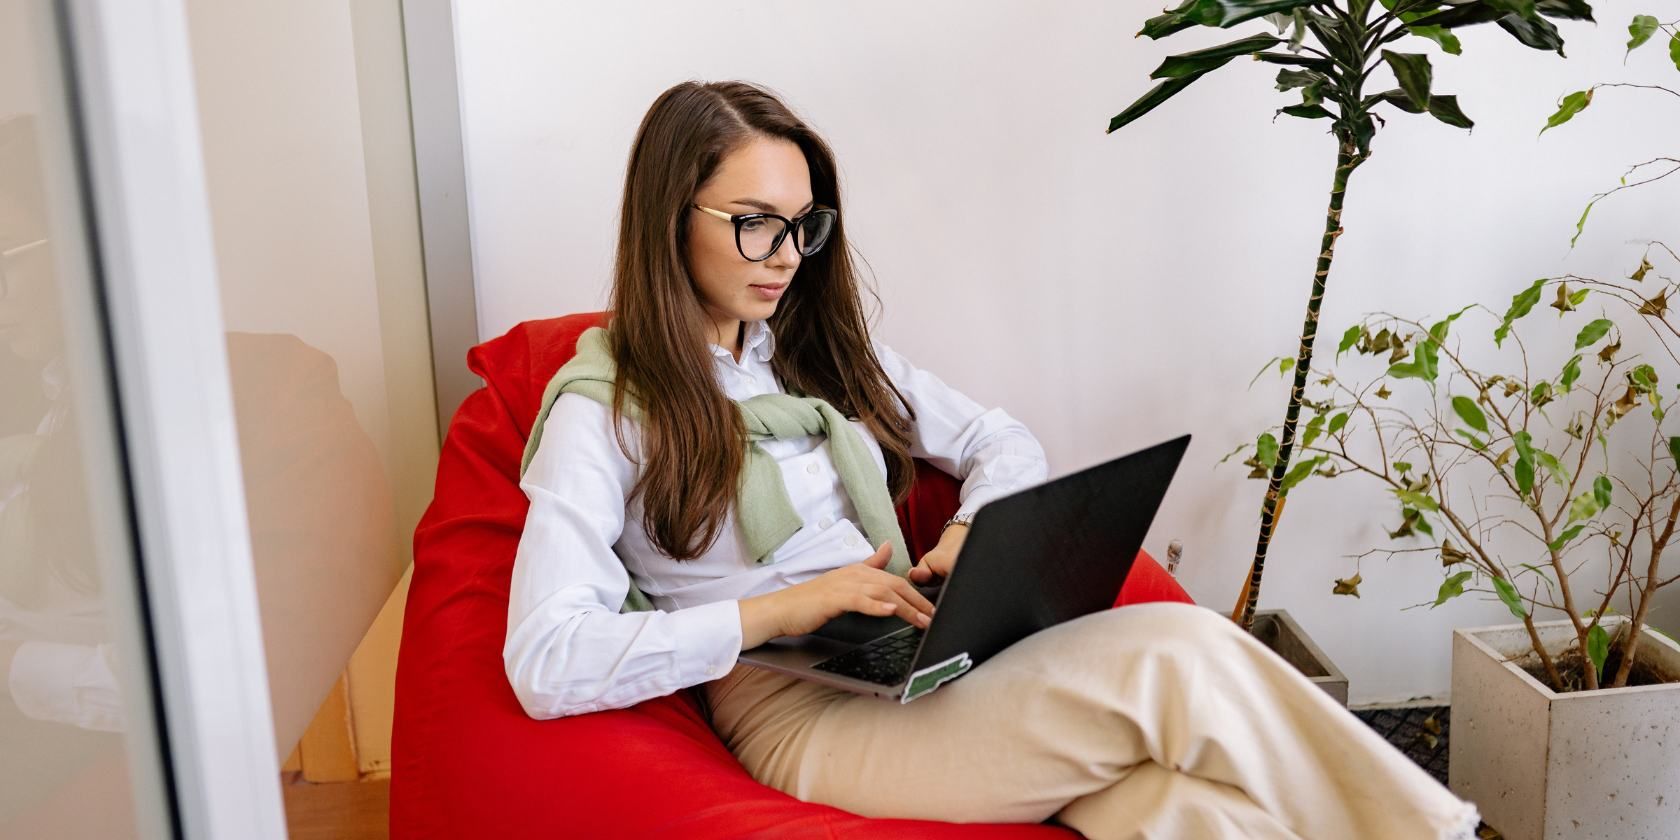 Femme aux cheveux noirs avec des lunettes tapant sur un ordinateur portable et assis sur un sac de haricots rouges